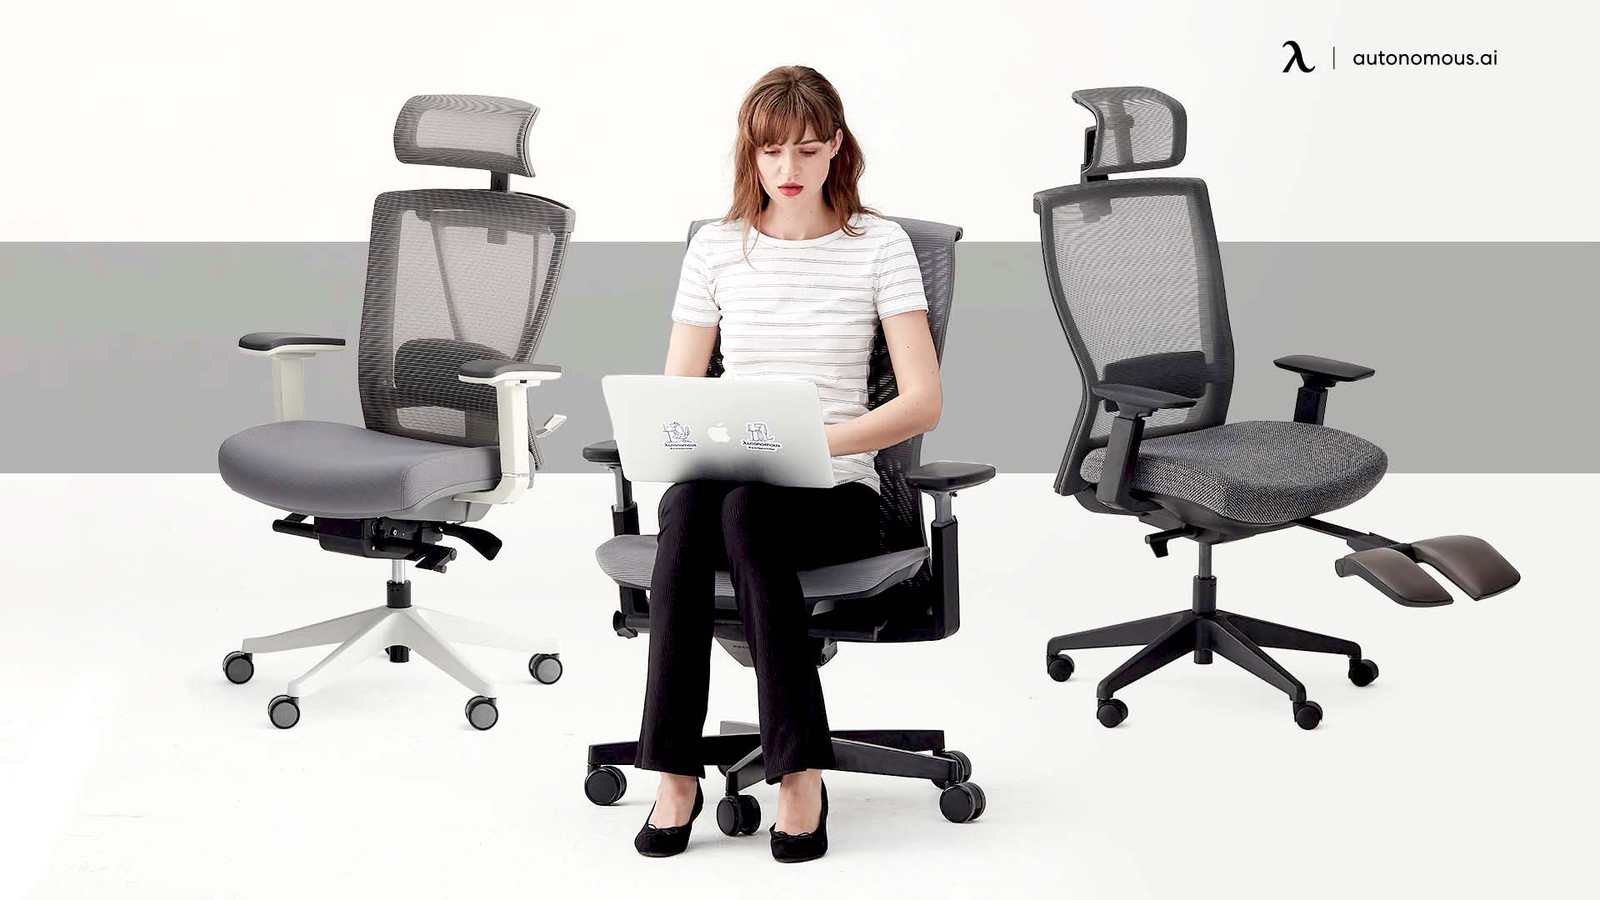 Autonomous Ergonomic Chair Sale - Best Office Chair Deal